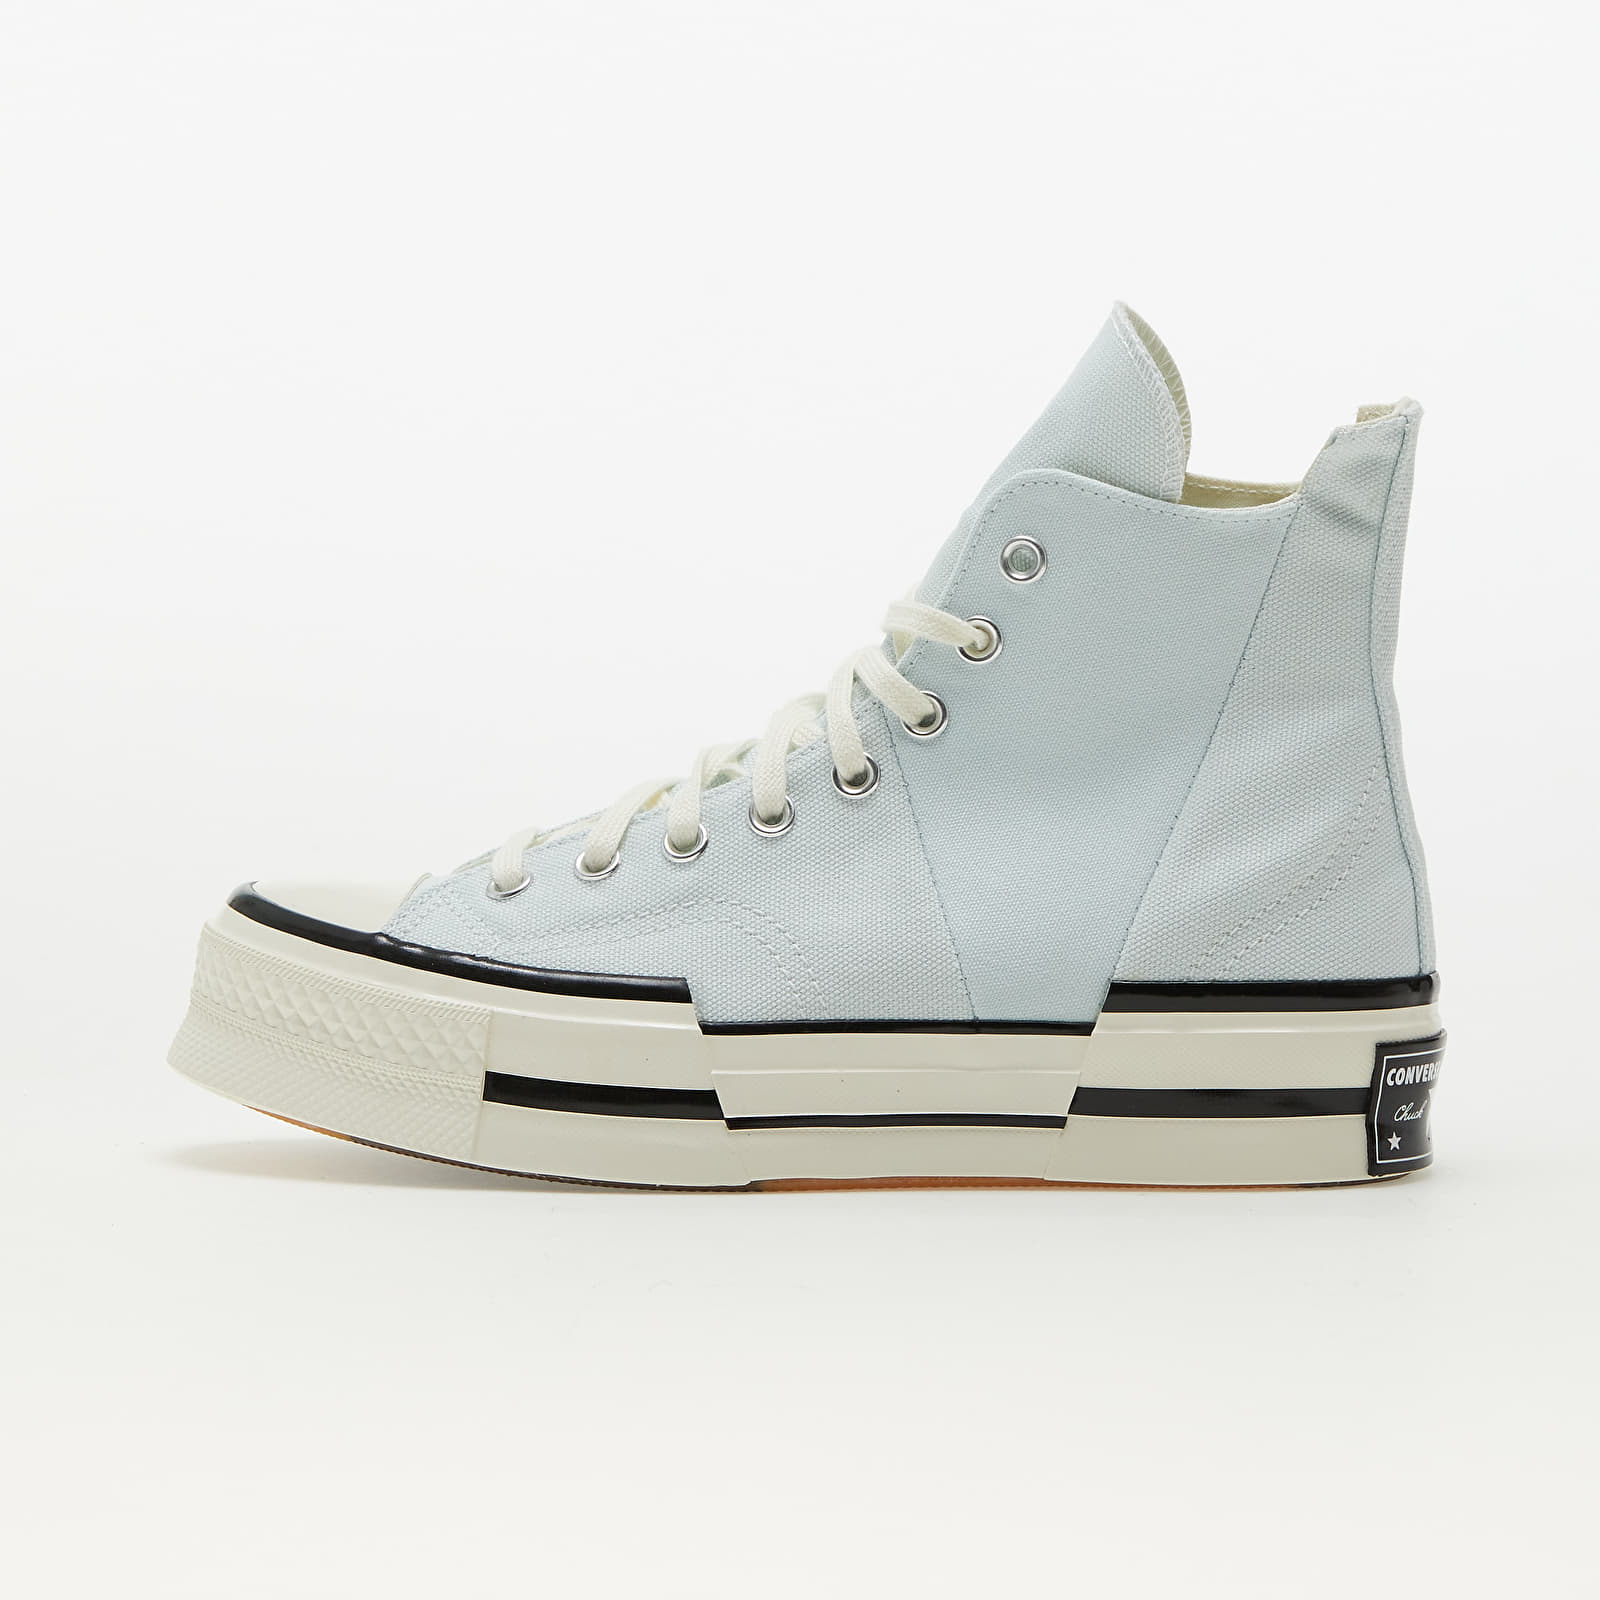 Încălțăminte și sneakerși pentru bărbați Converse Chuck 70 Plus Seasonal Color Aqua Mist/ Egret/ White